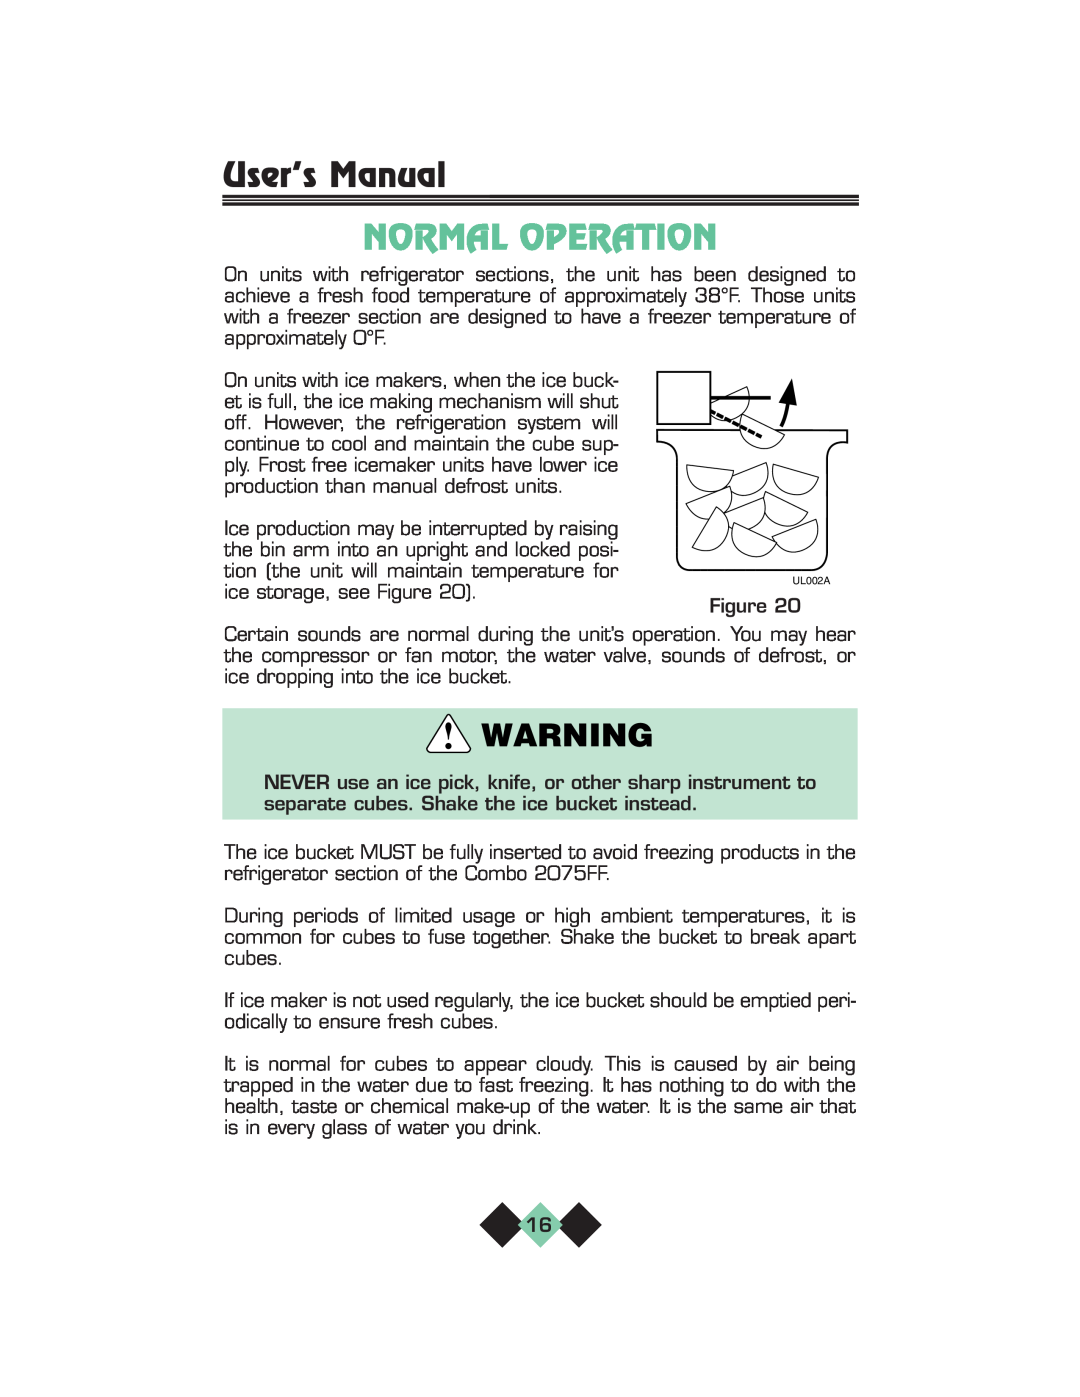 U-Line pmn manual Normal Operation, User’s Manual 